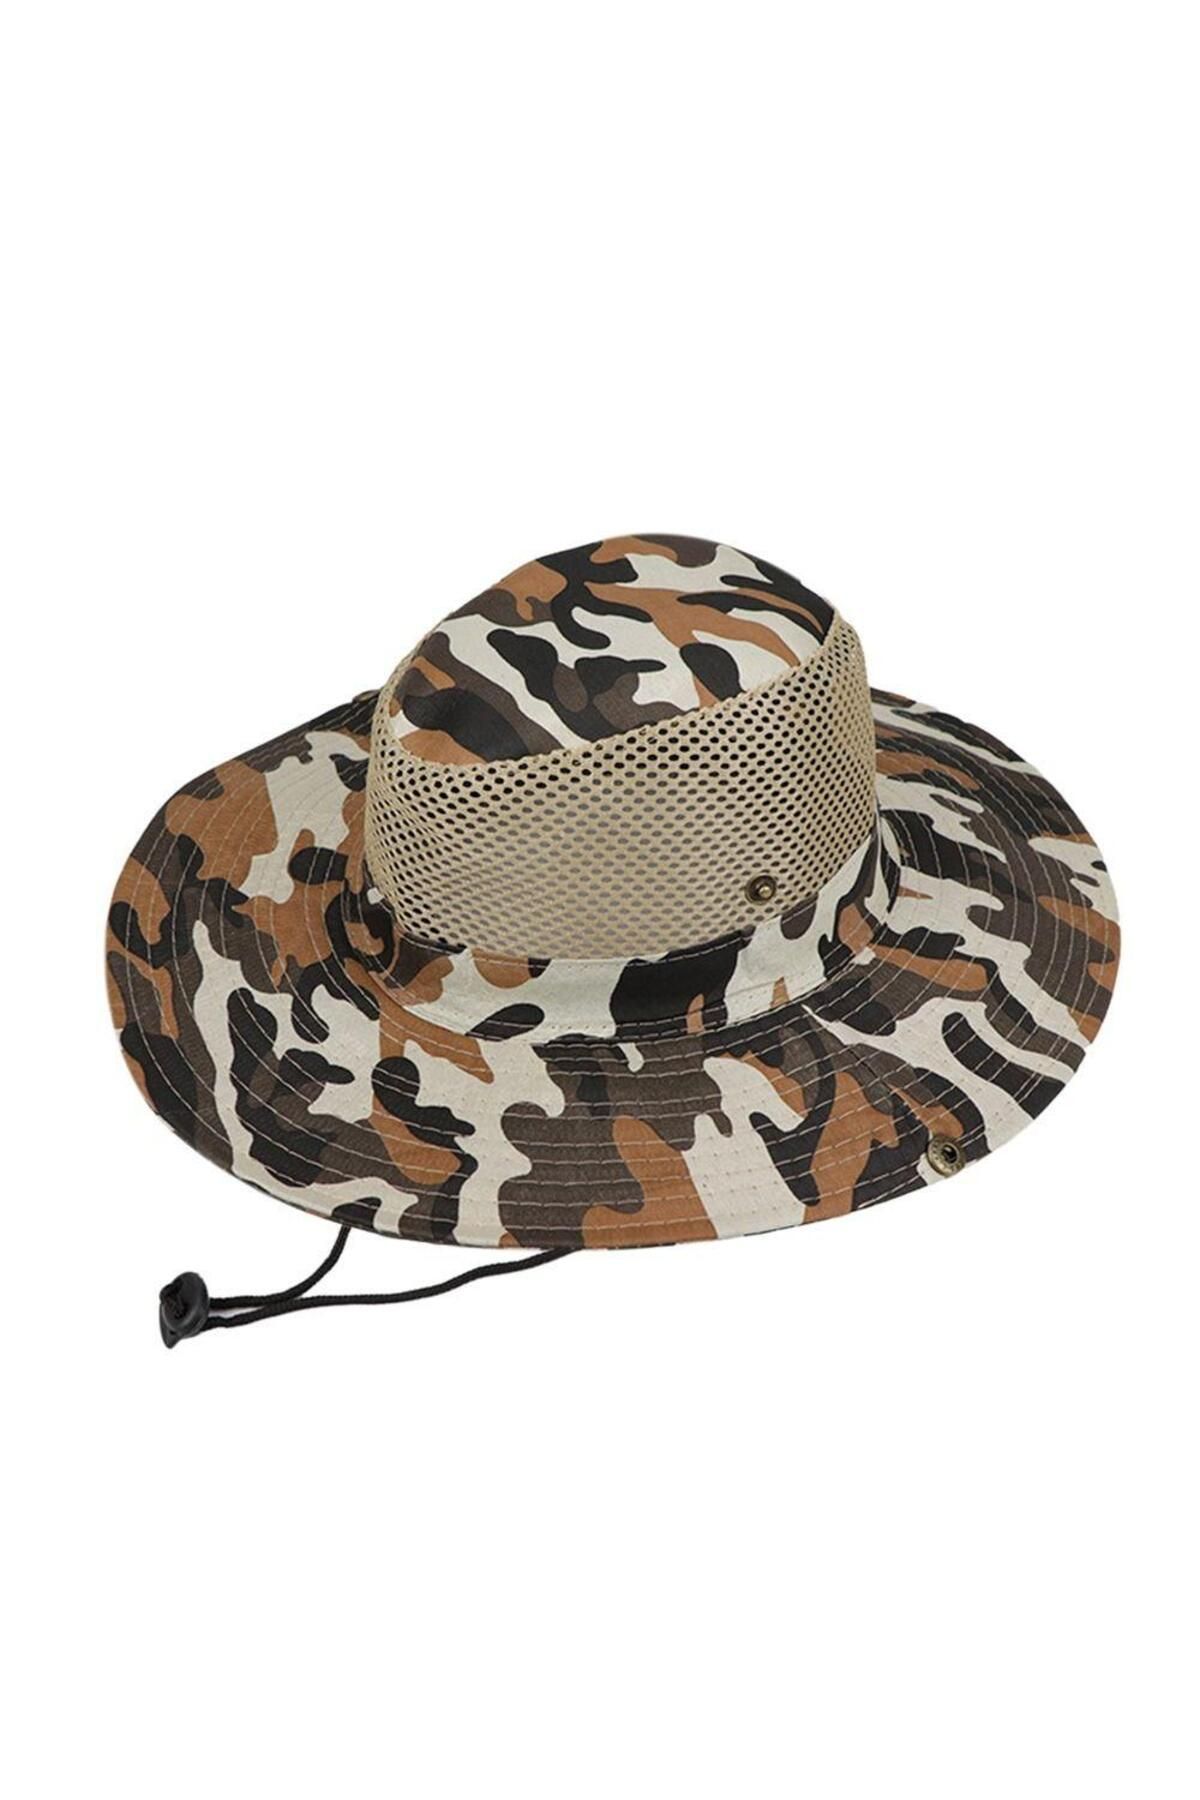 Rupen Kraft Fİleli Güneş Korumalı Profesyonel Safari Şapka Outdoor Şapka Katlanabilir Safari Şapka